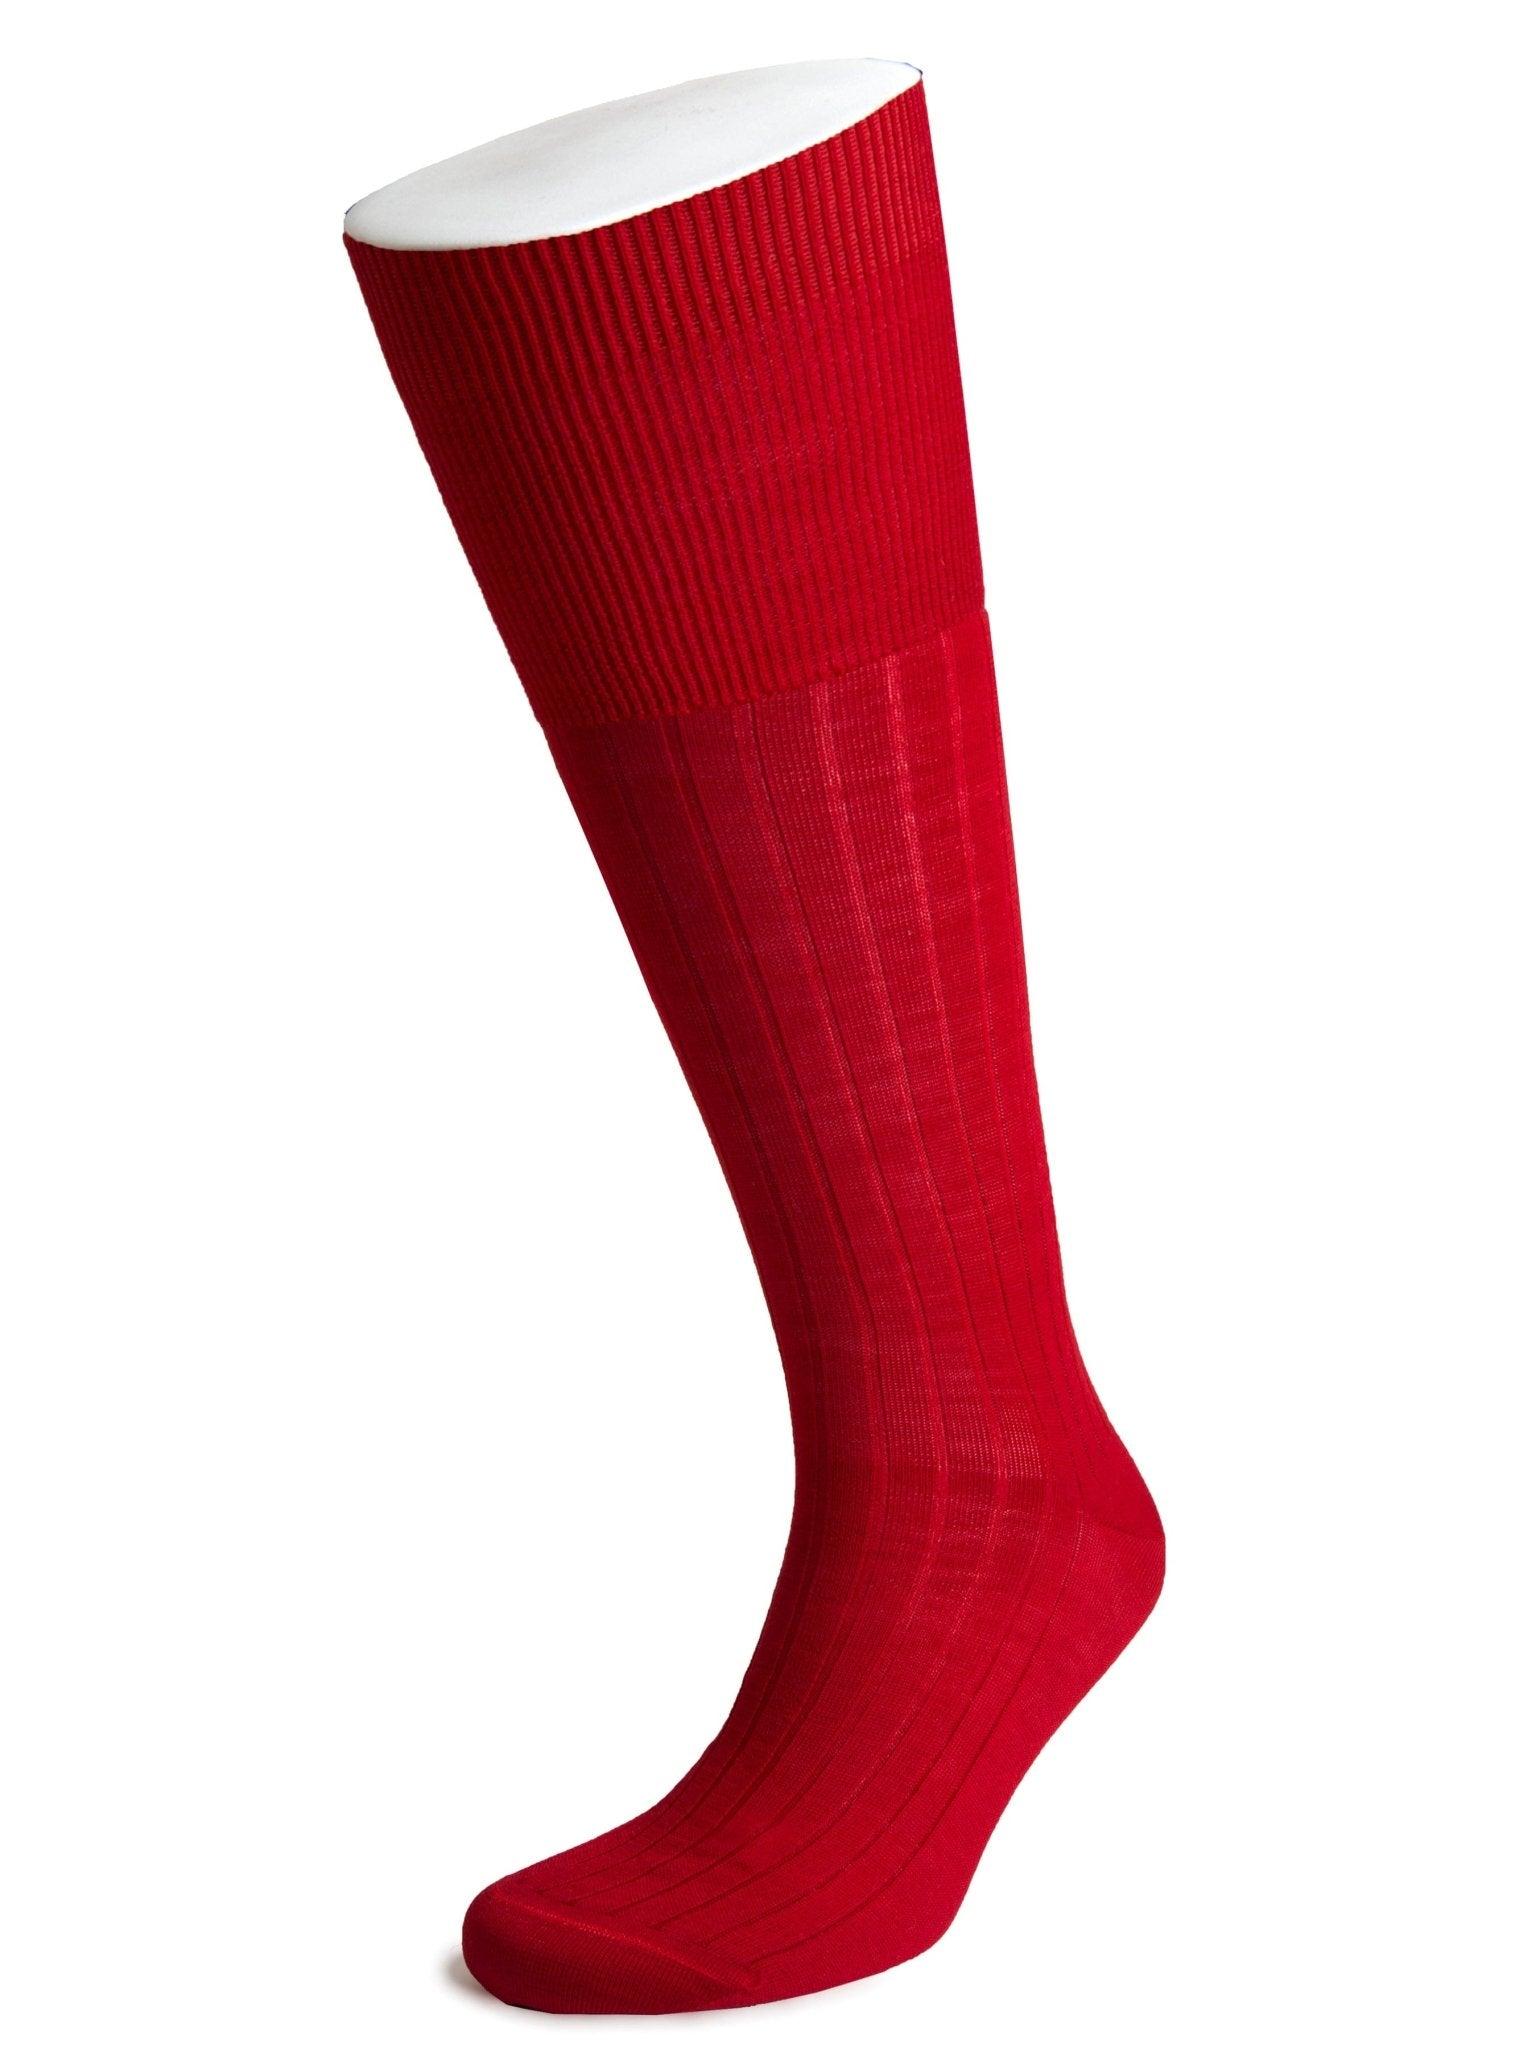 Long Red Wool Socks